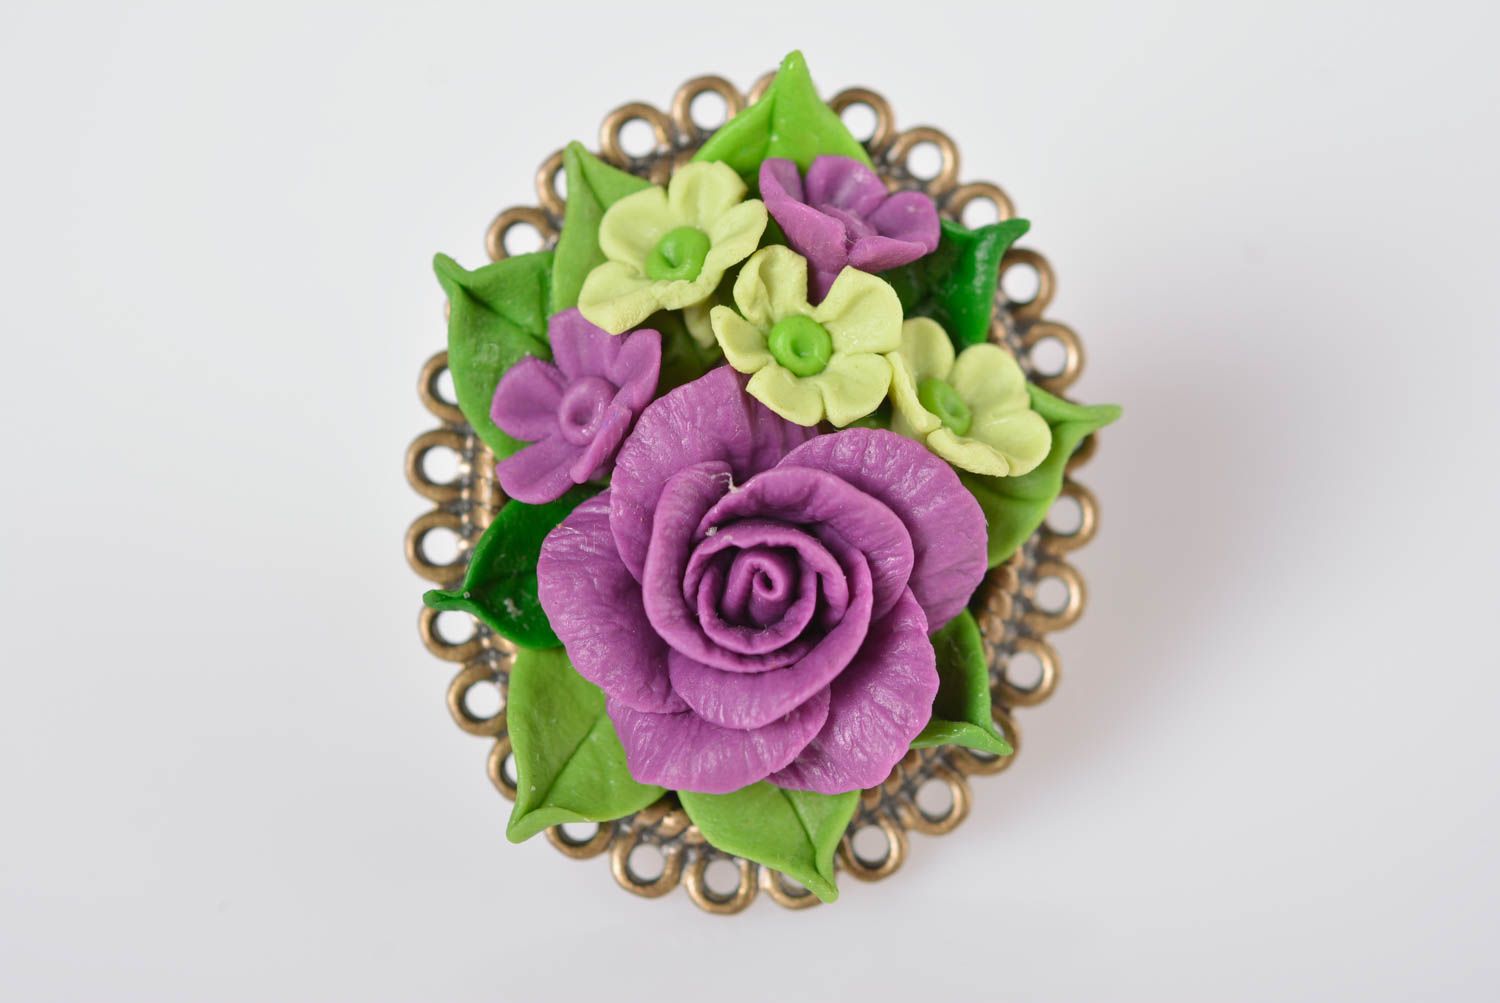 Кольцо ручной работы украшение из холодного фарфора цветочное модное кольцо фото 1